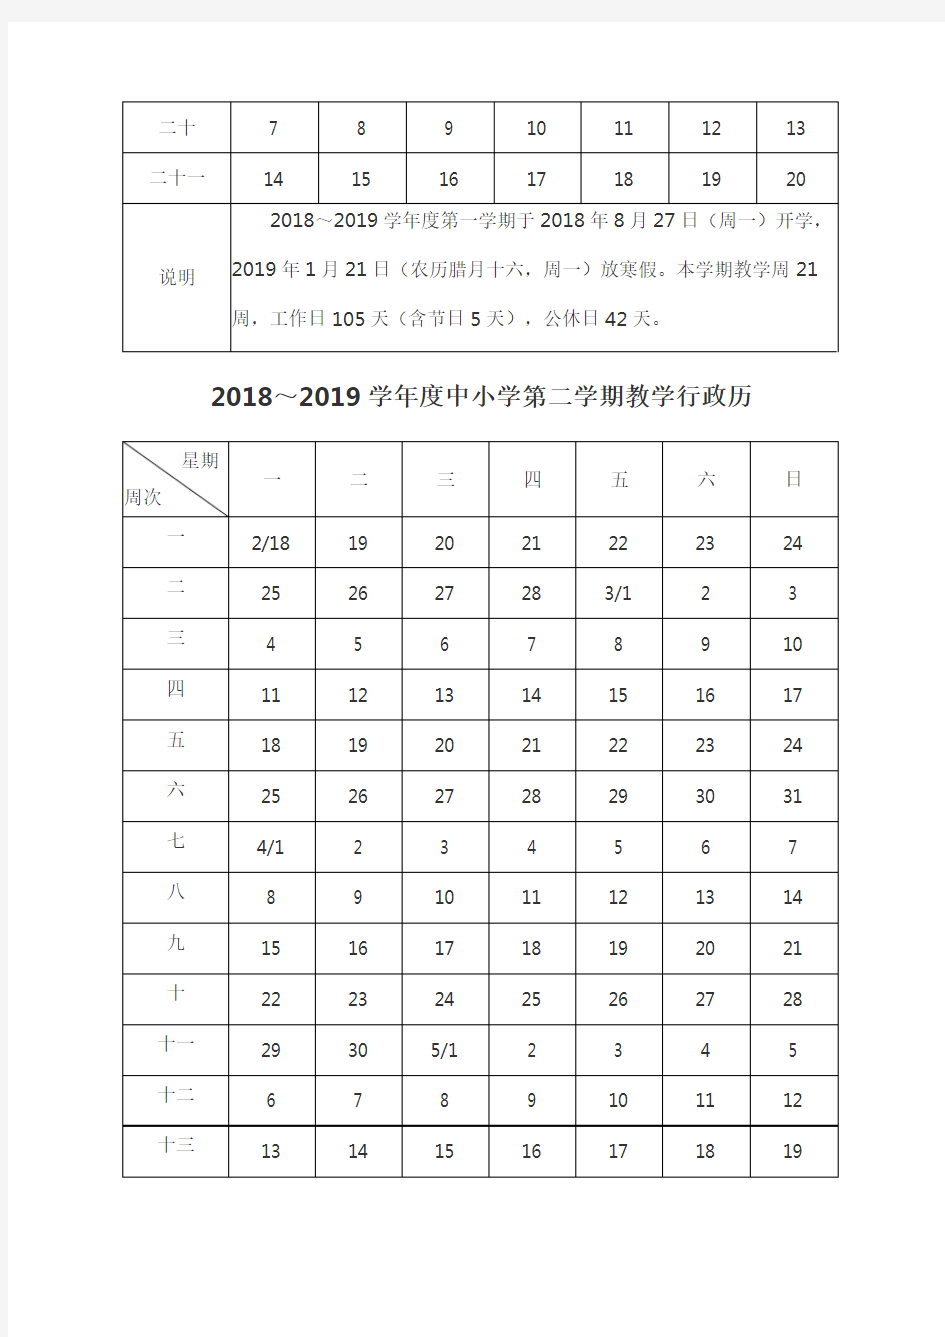 2018-2019教学行政历